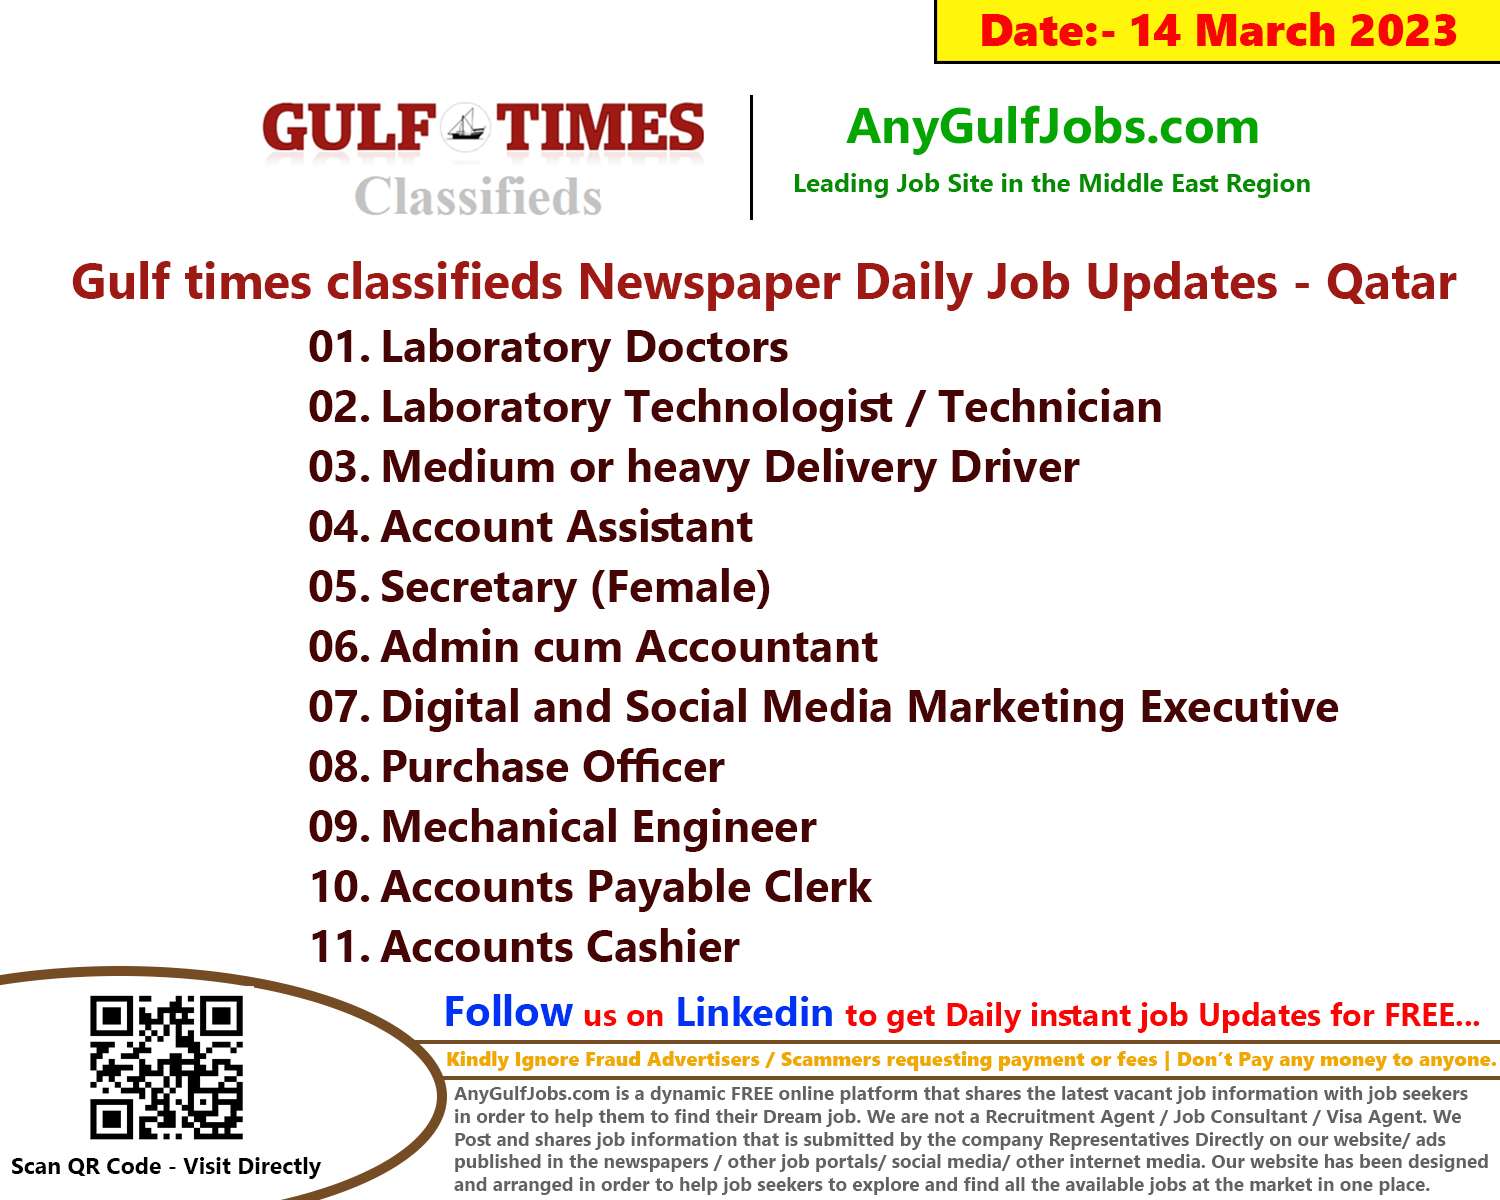 Gulf times classifieds Job Vacancies Qatar - 14 March 2023